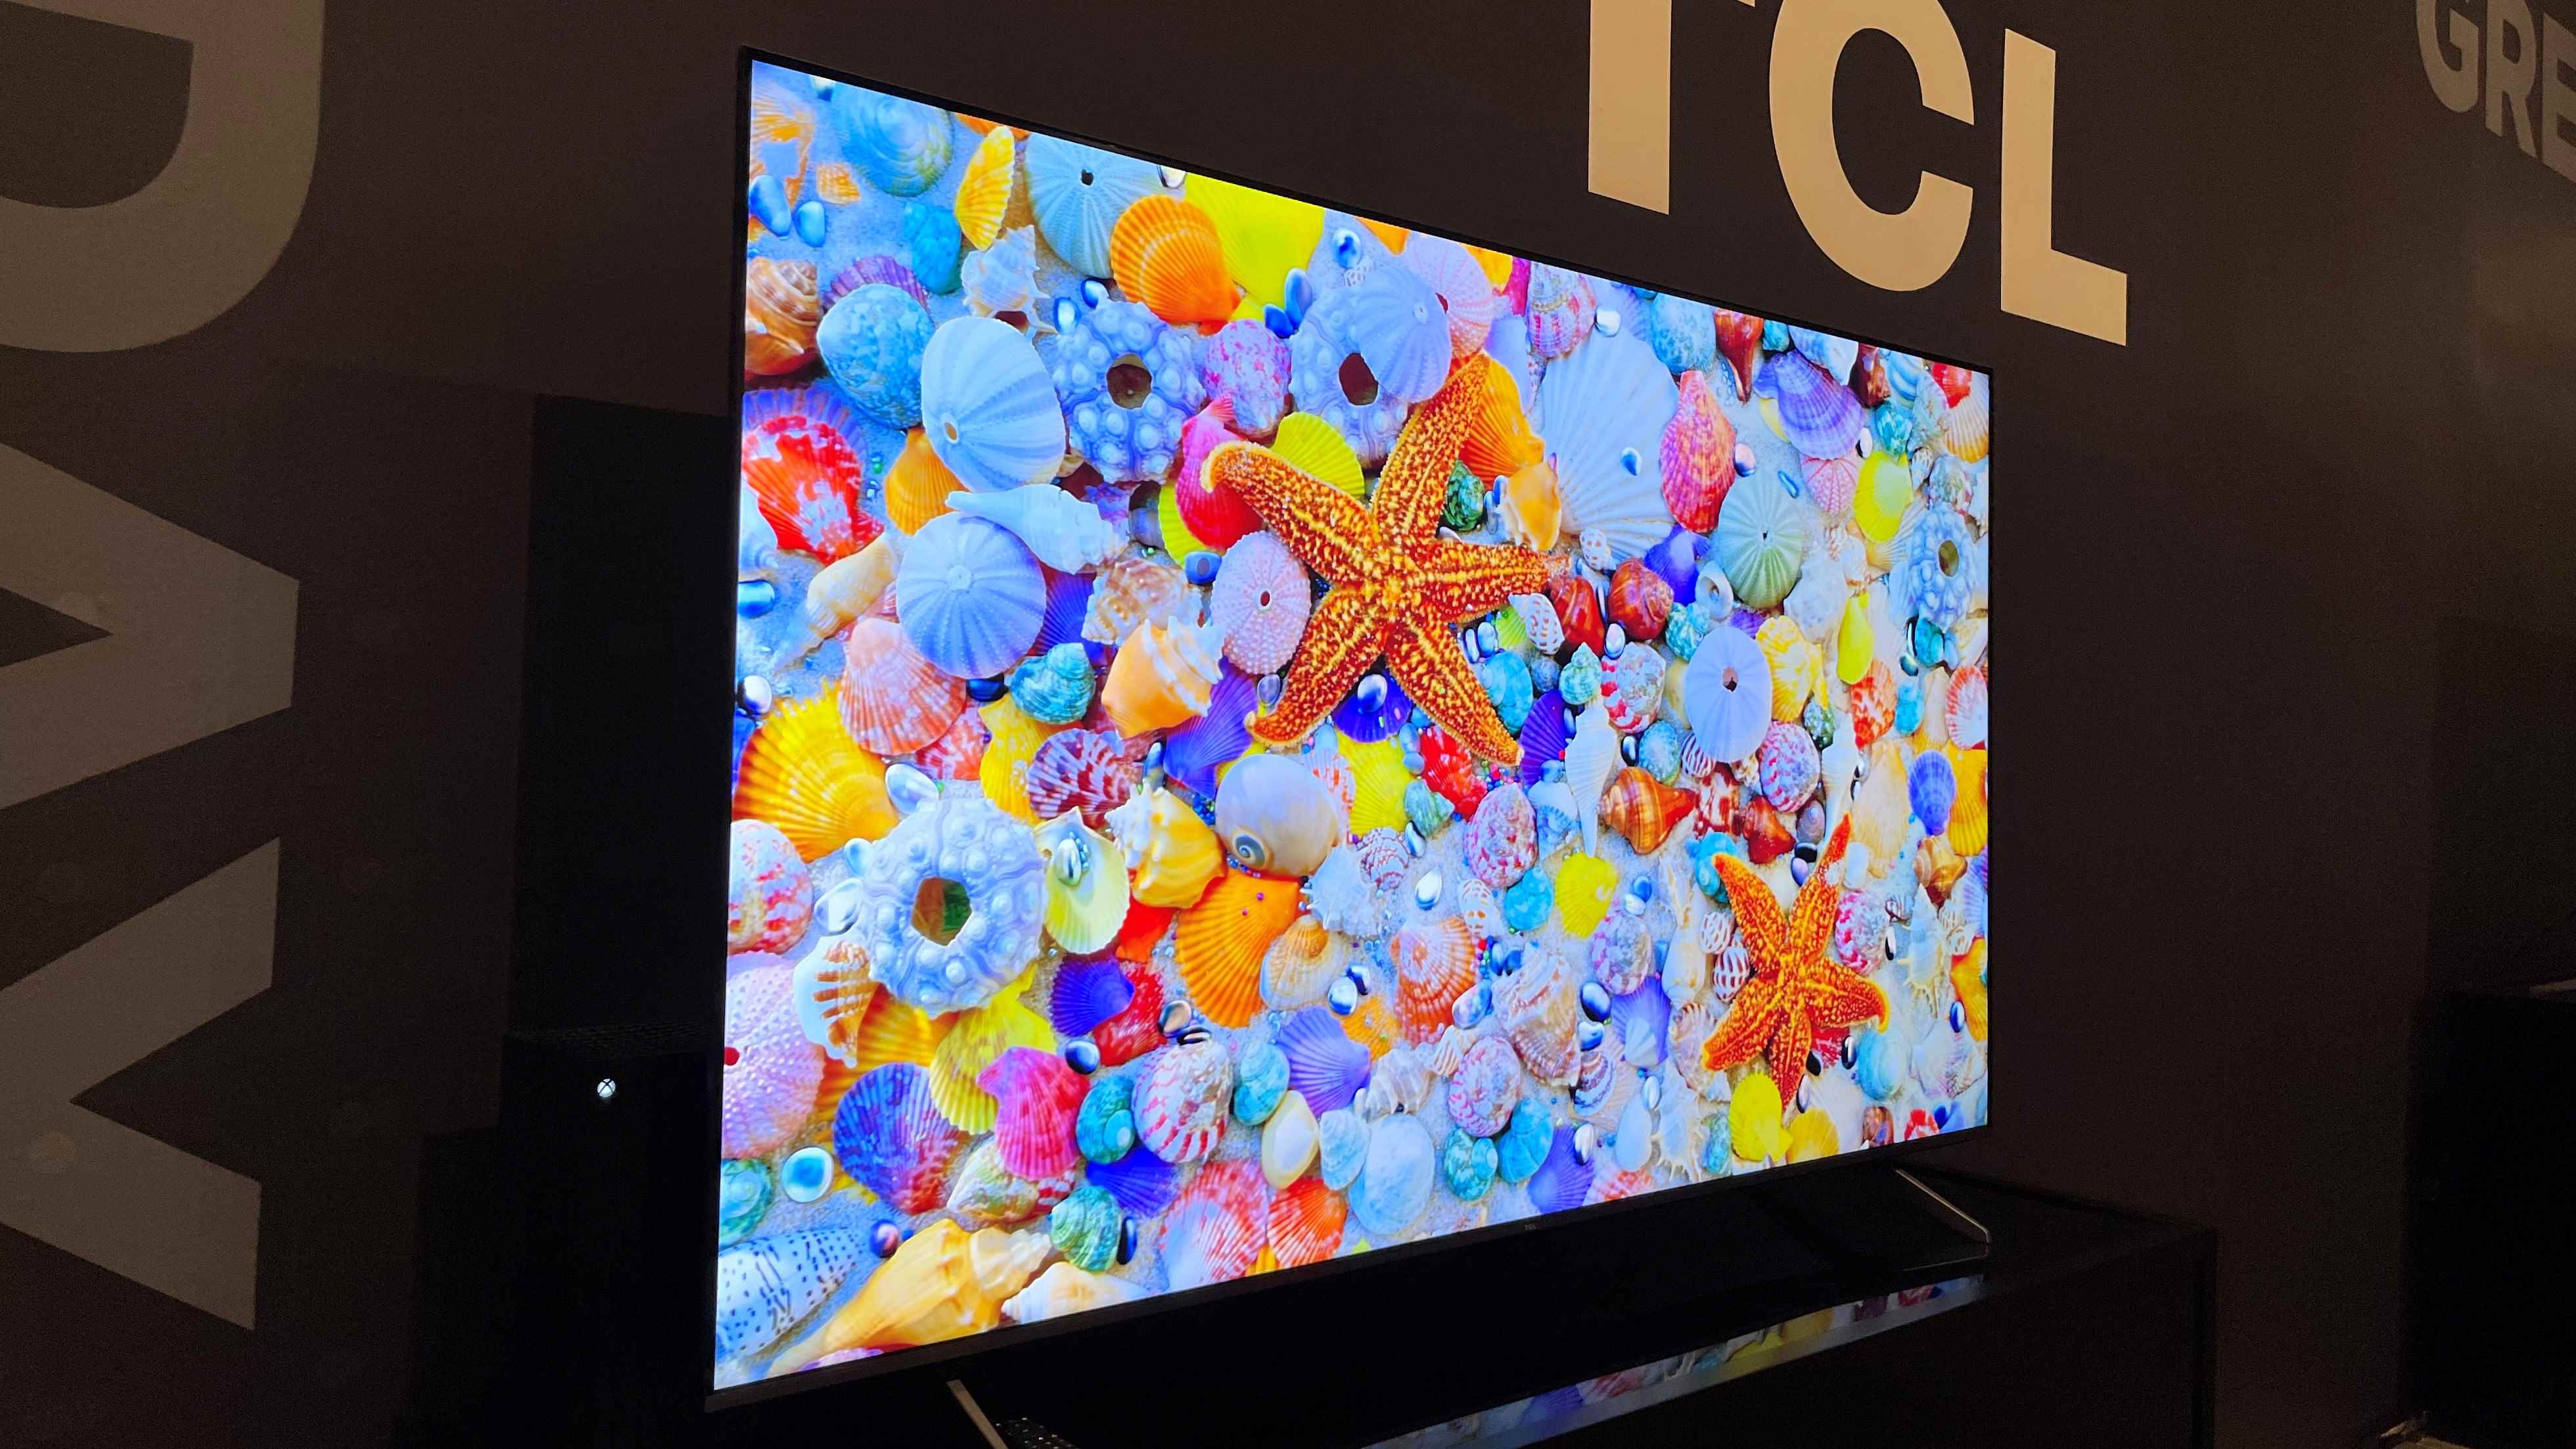 Renkli görüntü gösteren TCL Q6 serisi TV